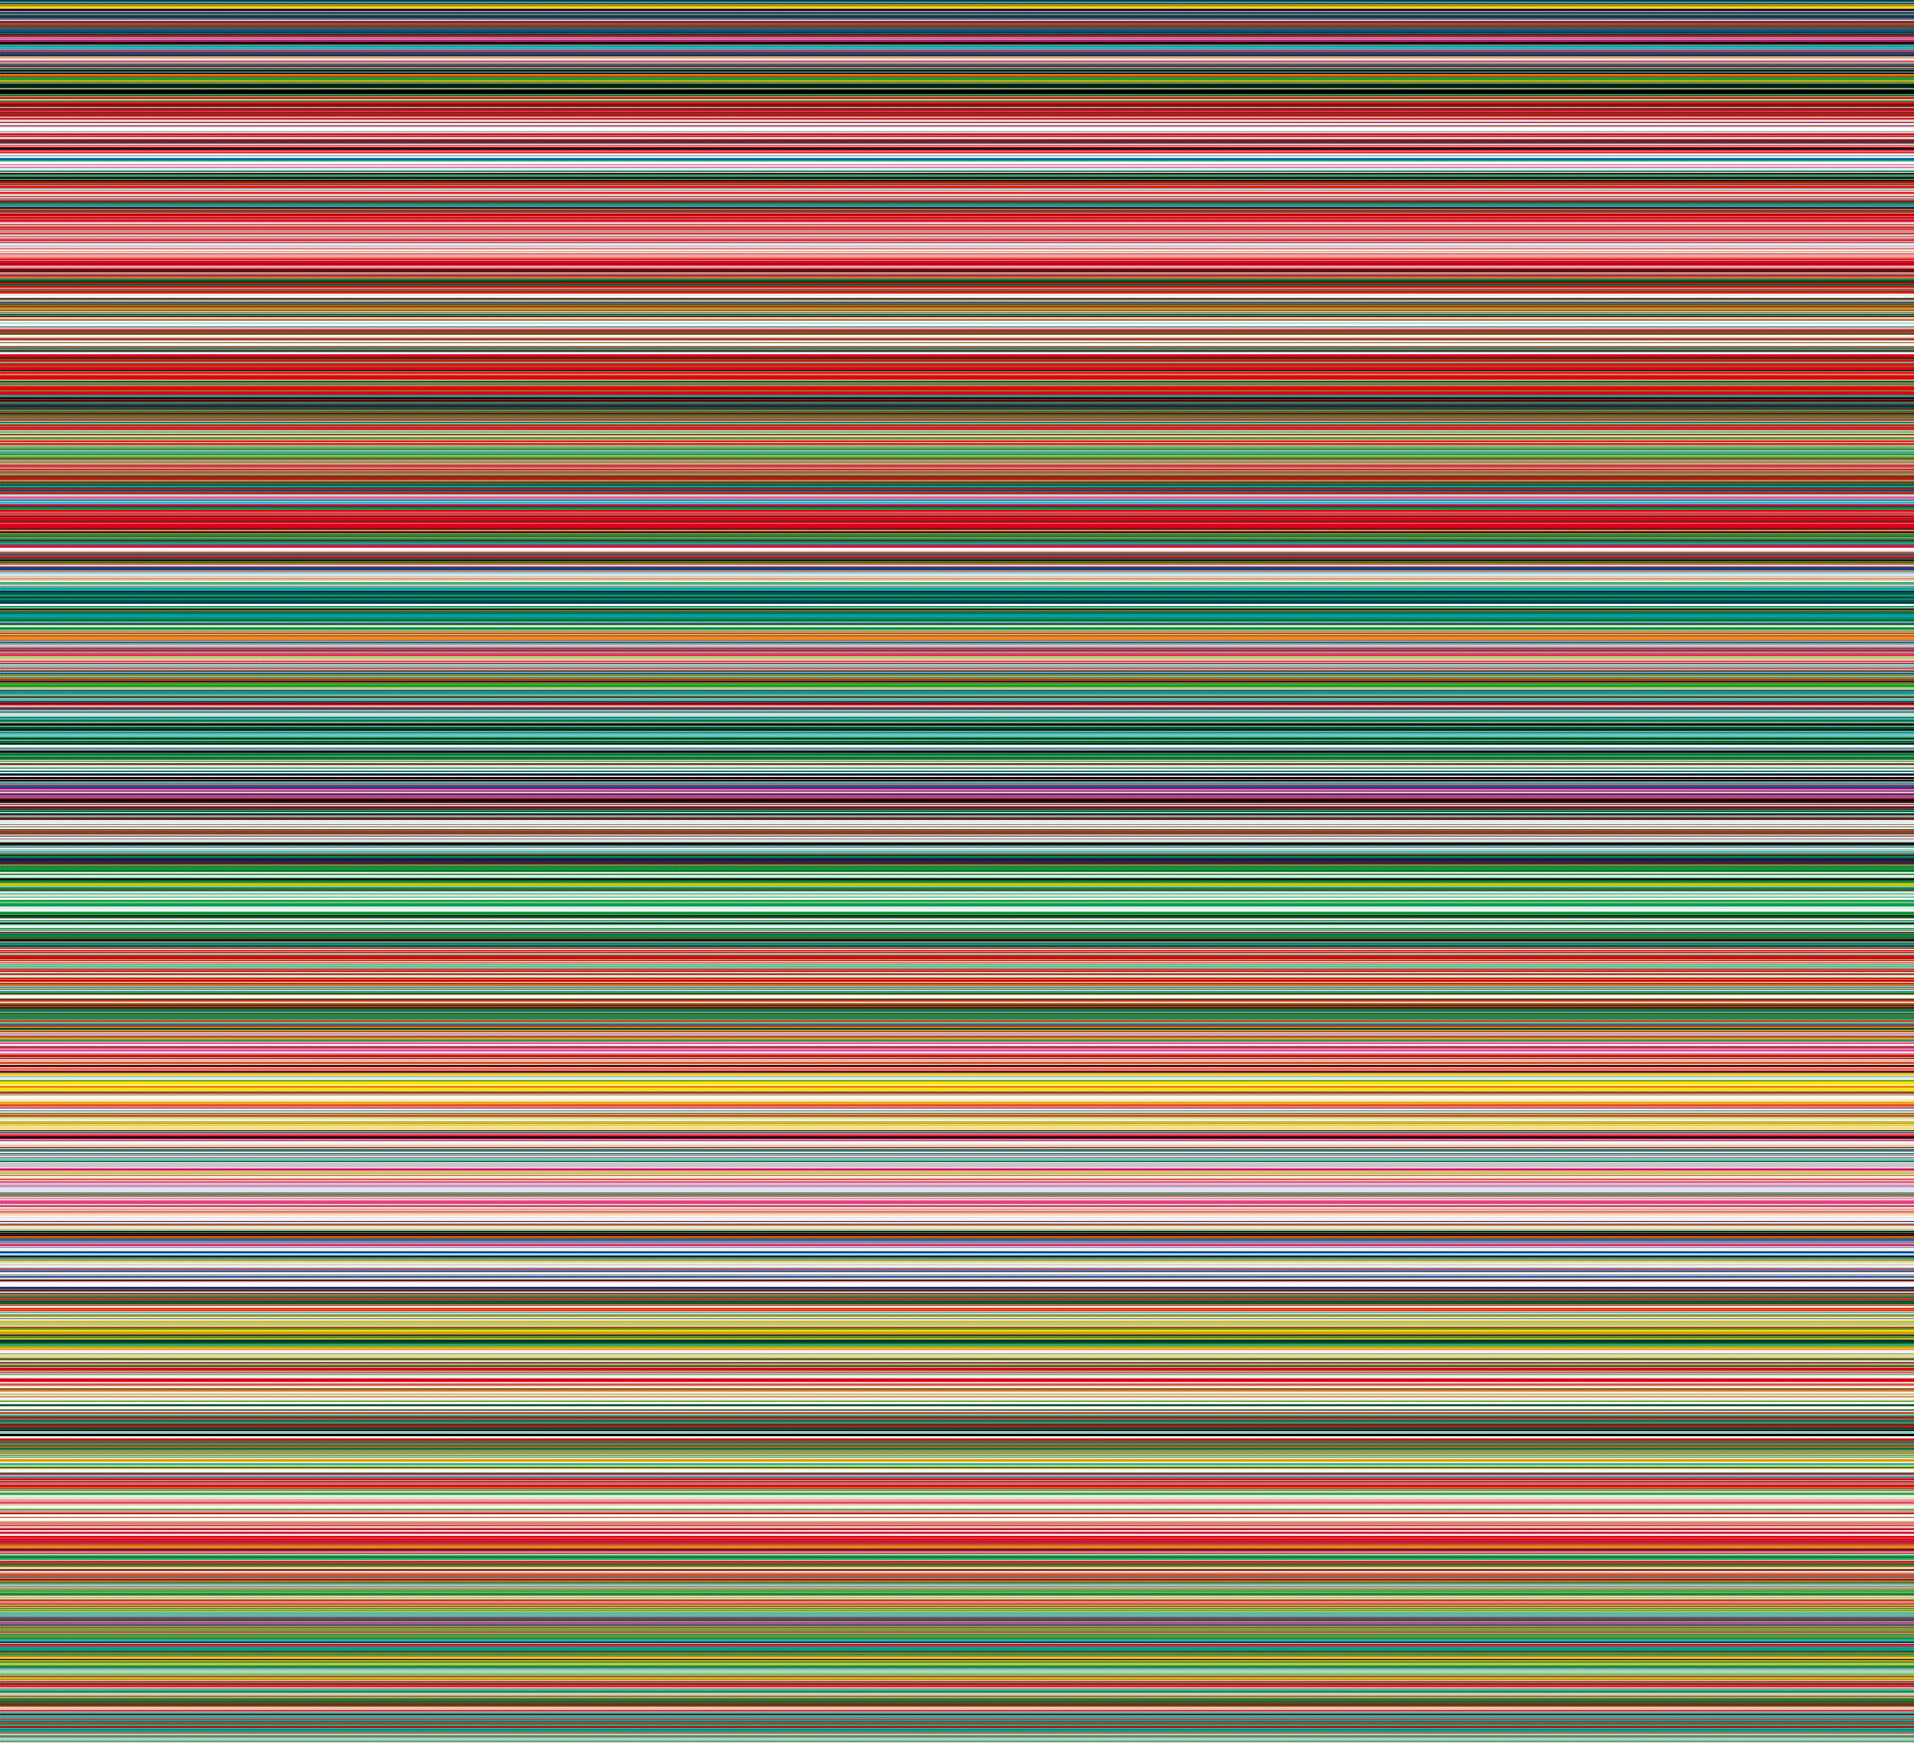 条 (927-9) - STRIP(927-9) by 格哈德 里希特 - 2012 - 210 x 230 cm 德累斯顿国家艺术收藏馆